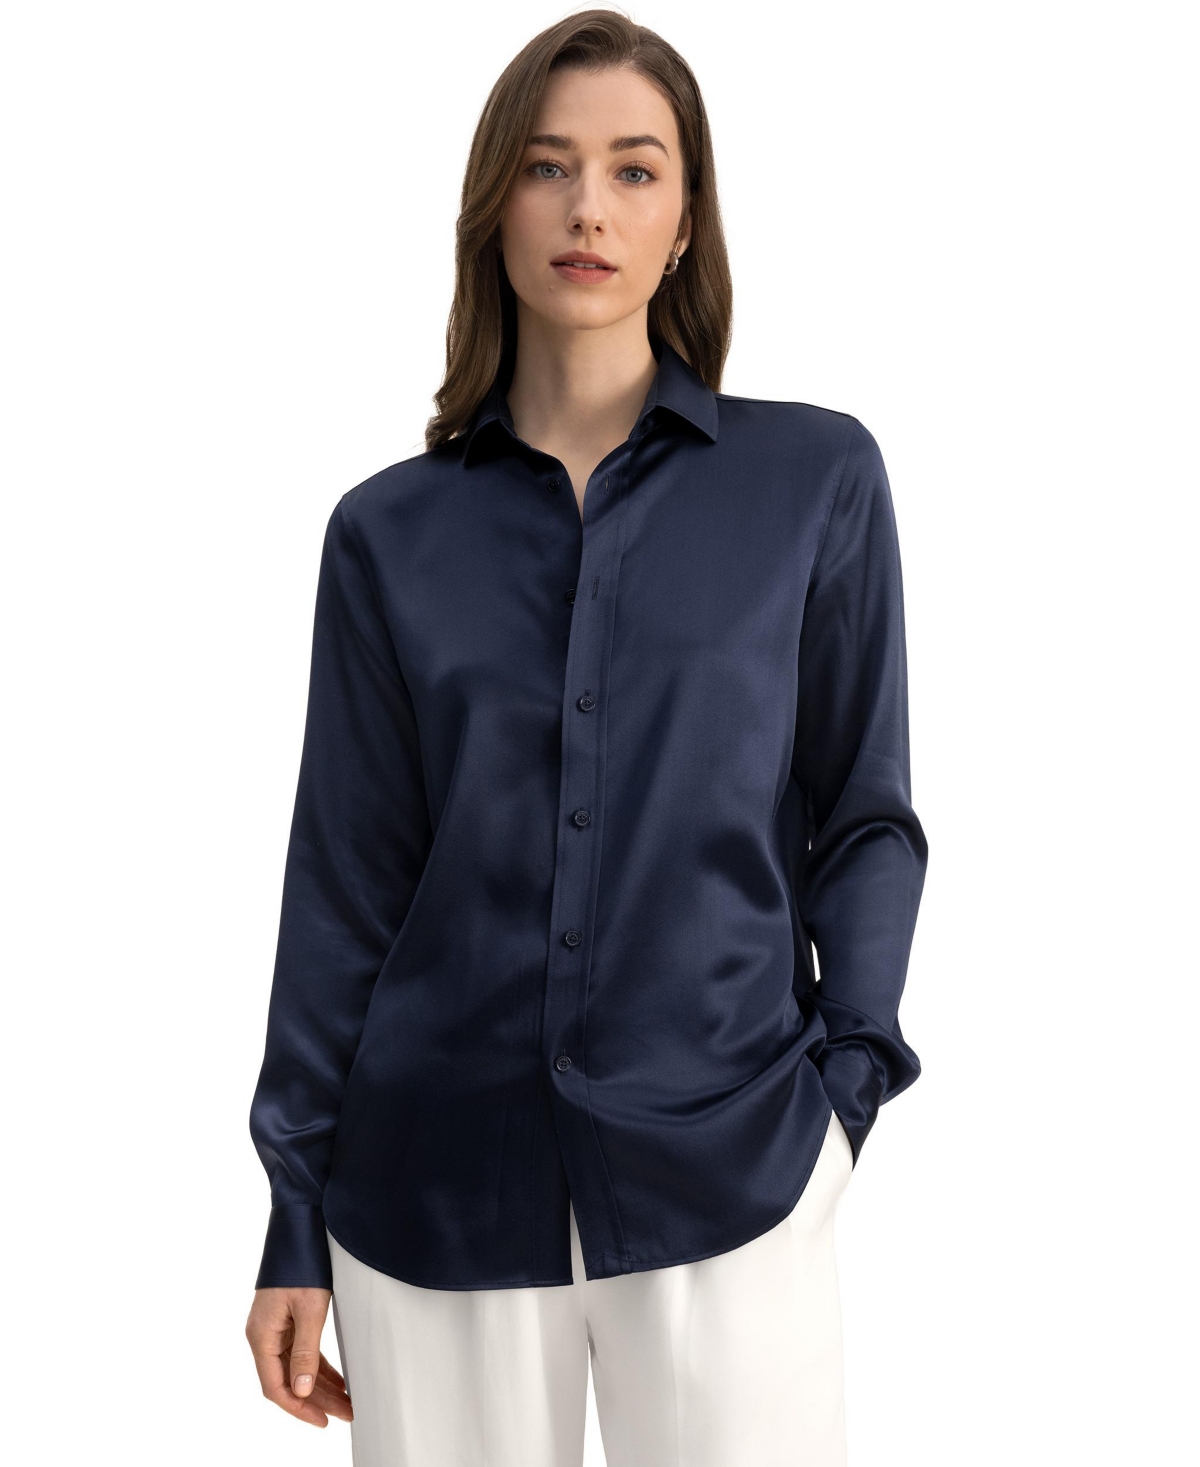 Women's Tailored Button Down Silk Shirt for Women - Navy blue